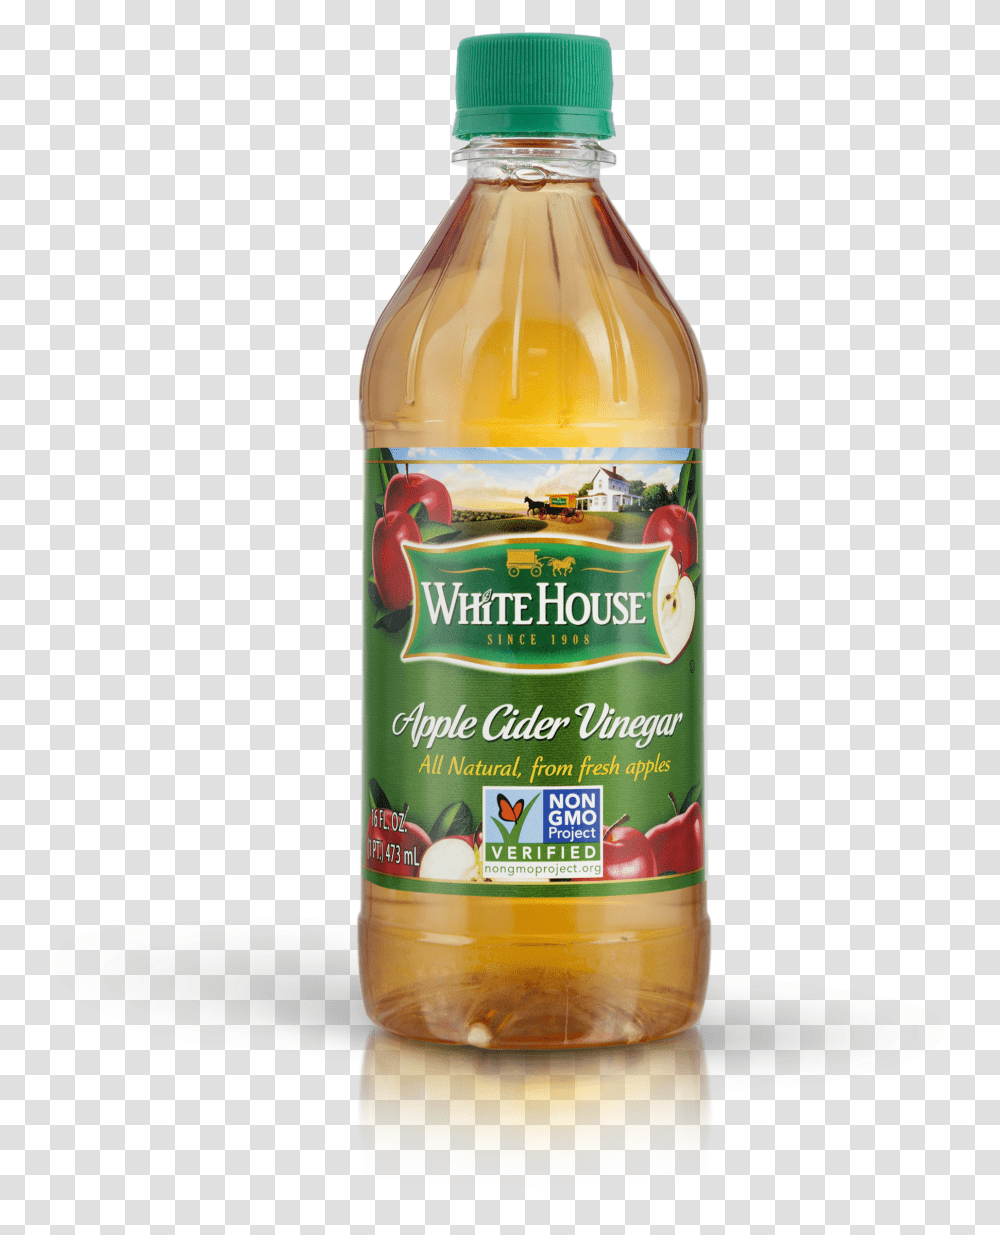 Apple Cider Vinegar Bottle, Food, Beer, Alcohol, Beverage Transparent Png